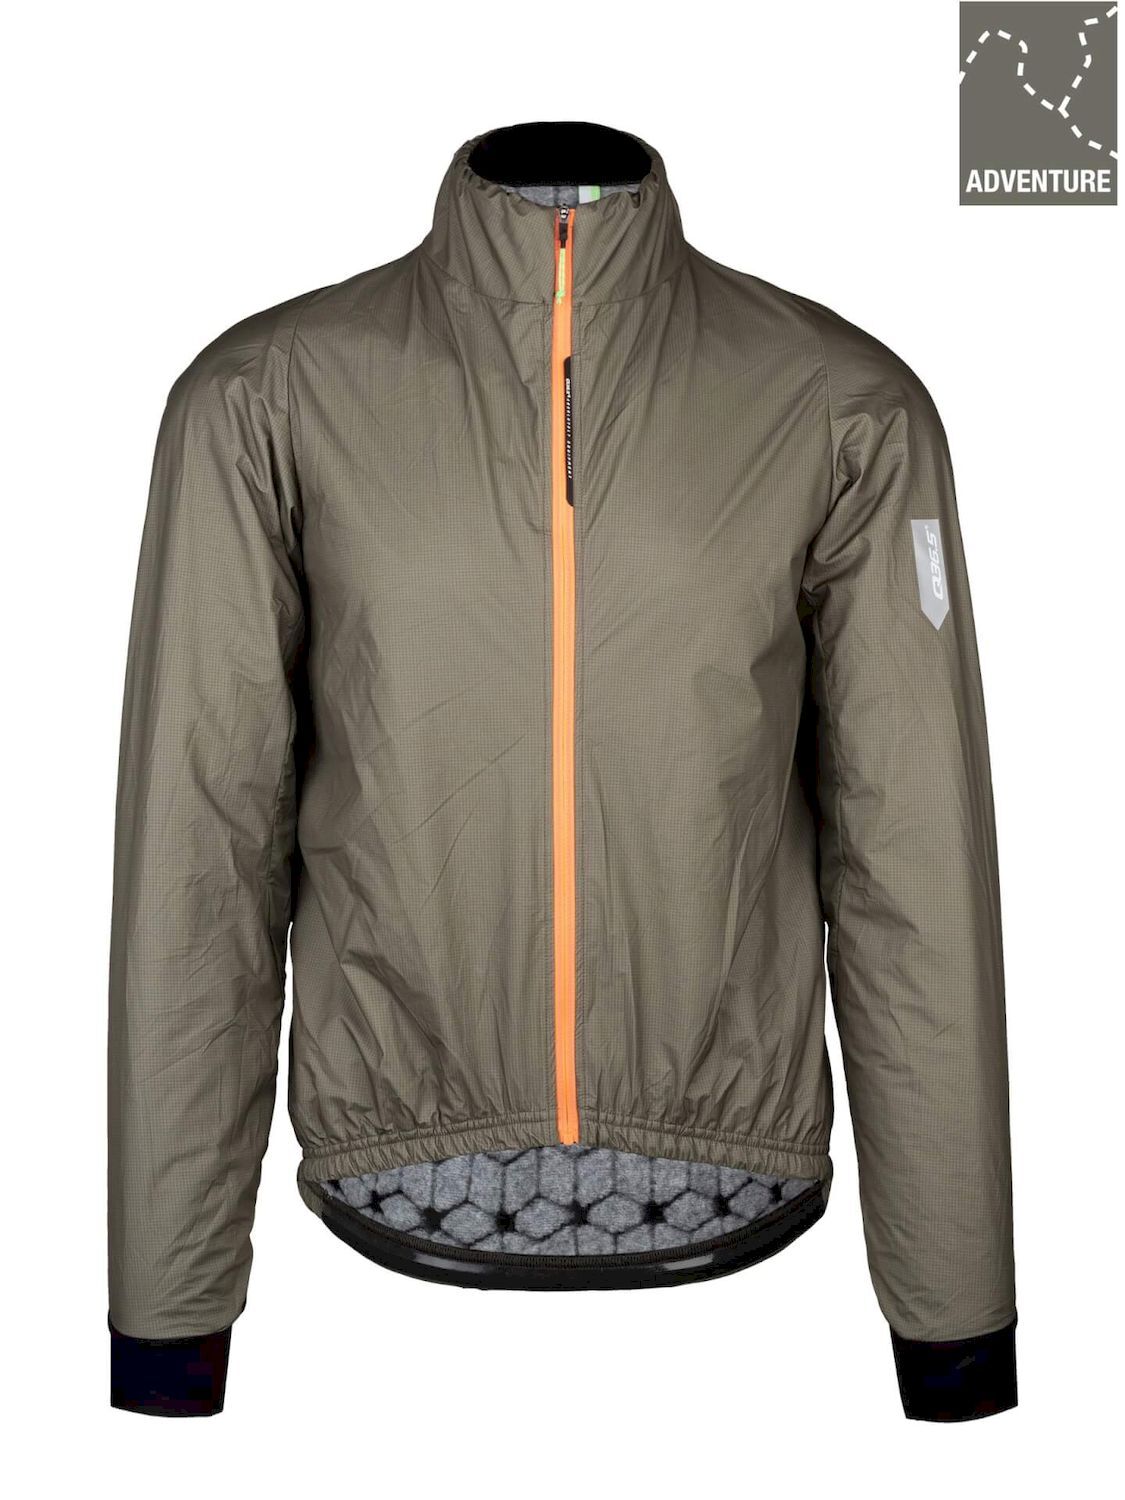 Q36.5 Adventure Winter Jacket - Chaqueta ciclismo - Hombre